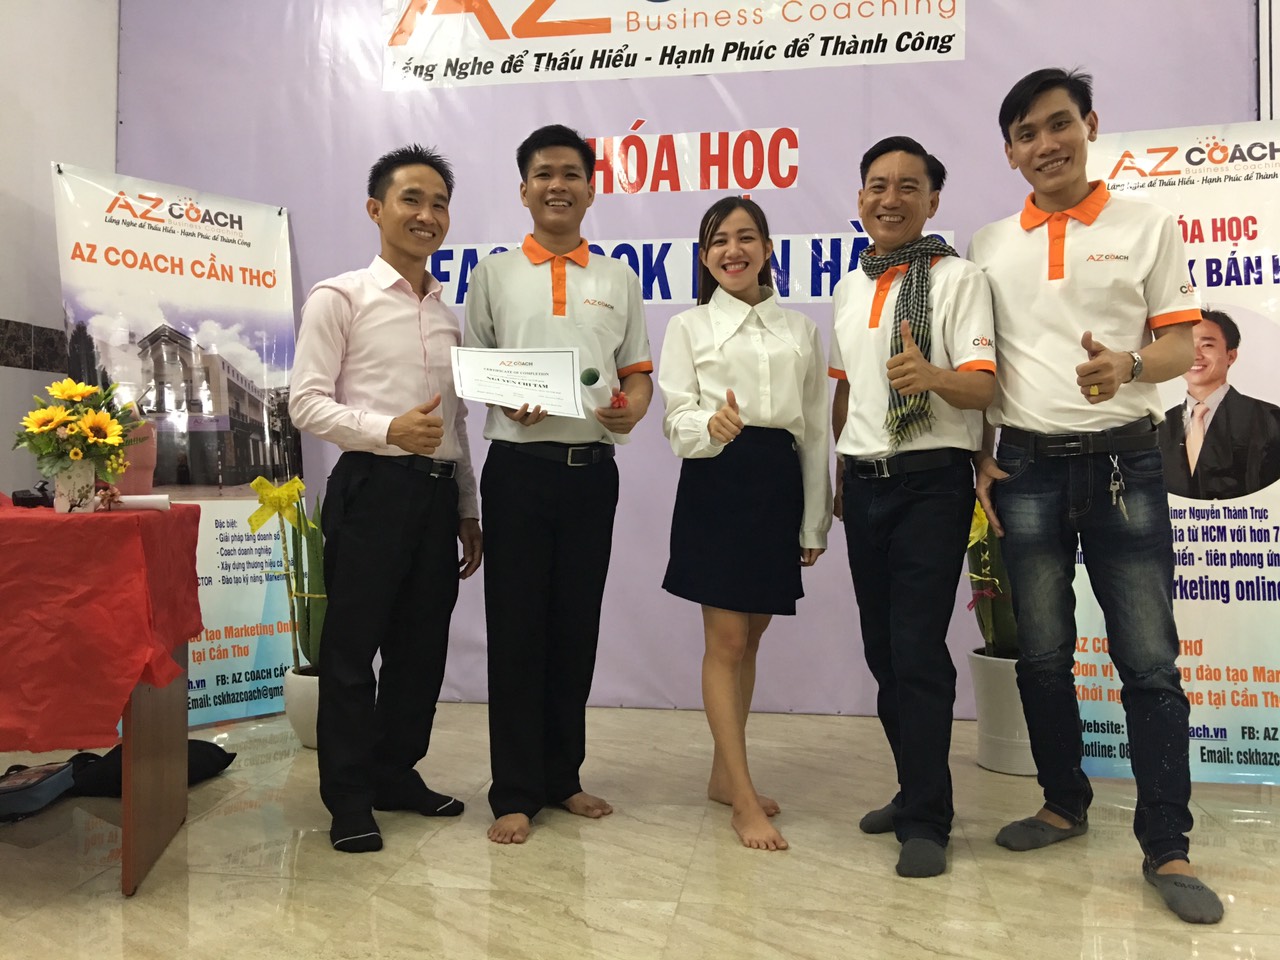 trao giấy chứng nhận cho chuyên gia Nguyễn Chí Tâm